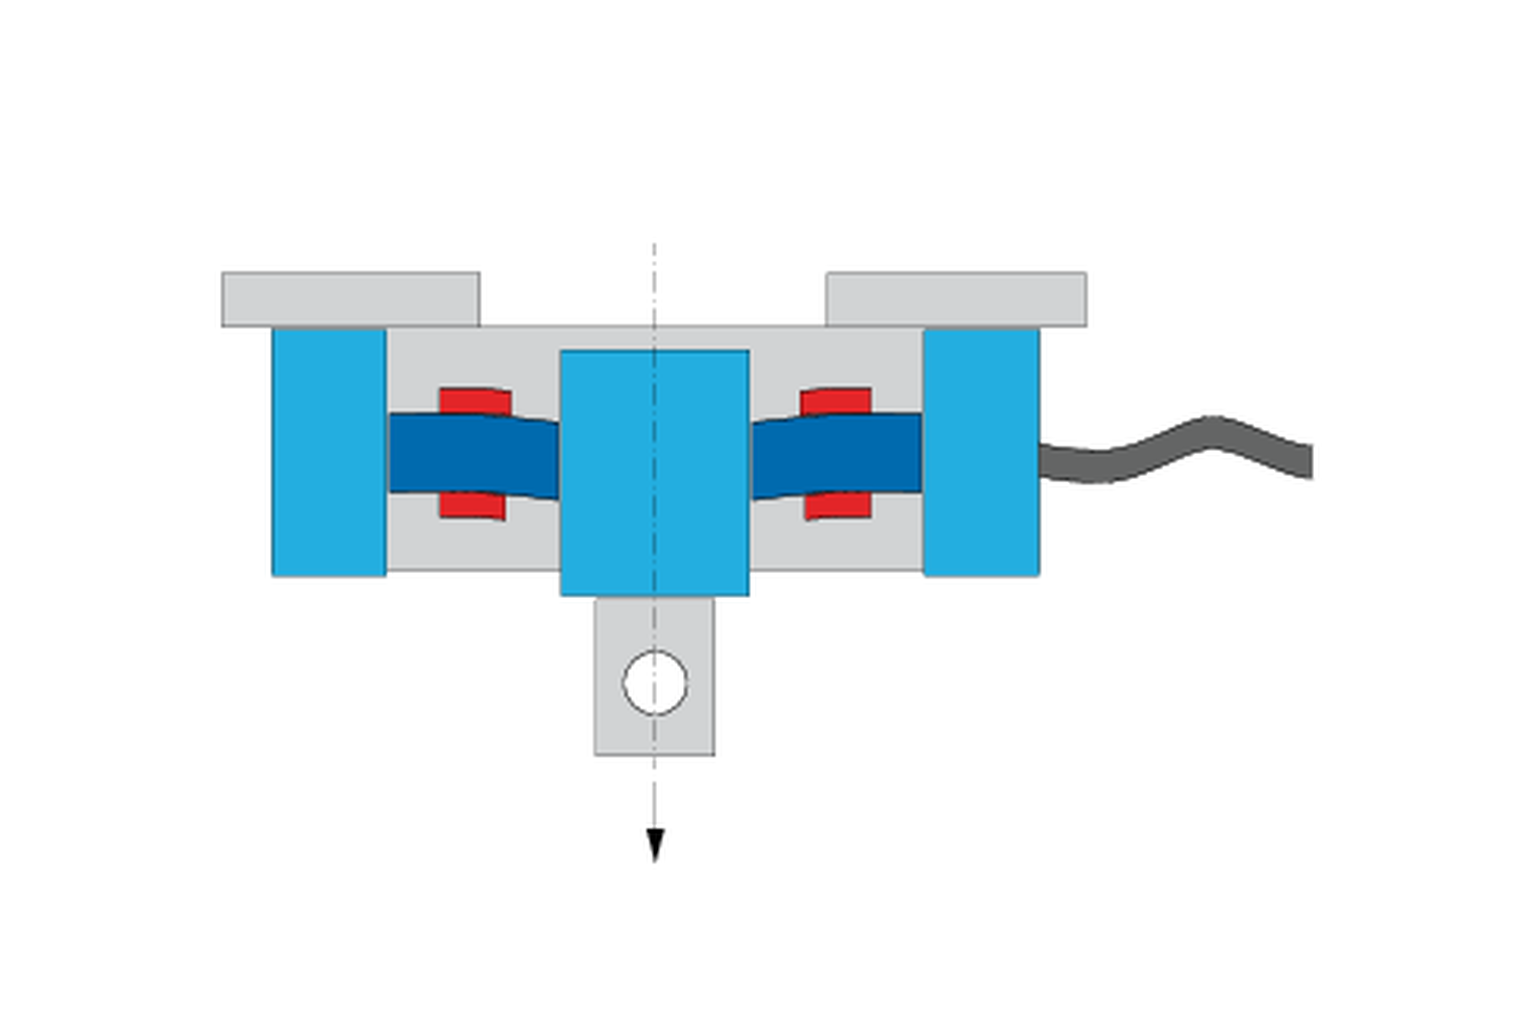 Come funziona una cella di carico? Disegno della cella di carico con strain guage in allungamento e compressione